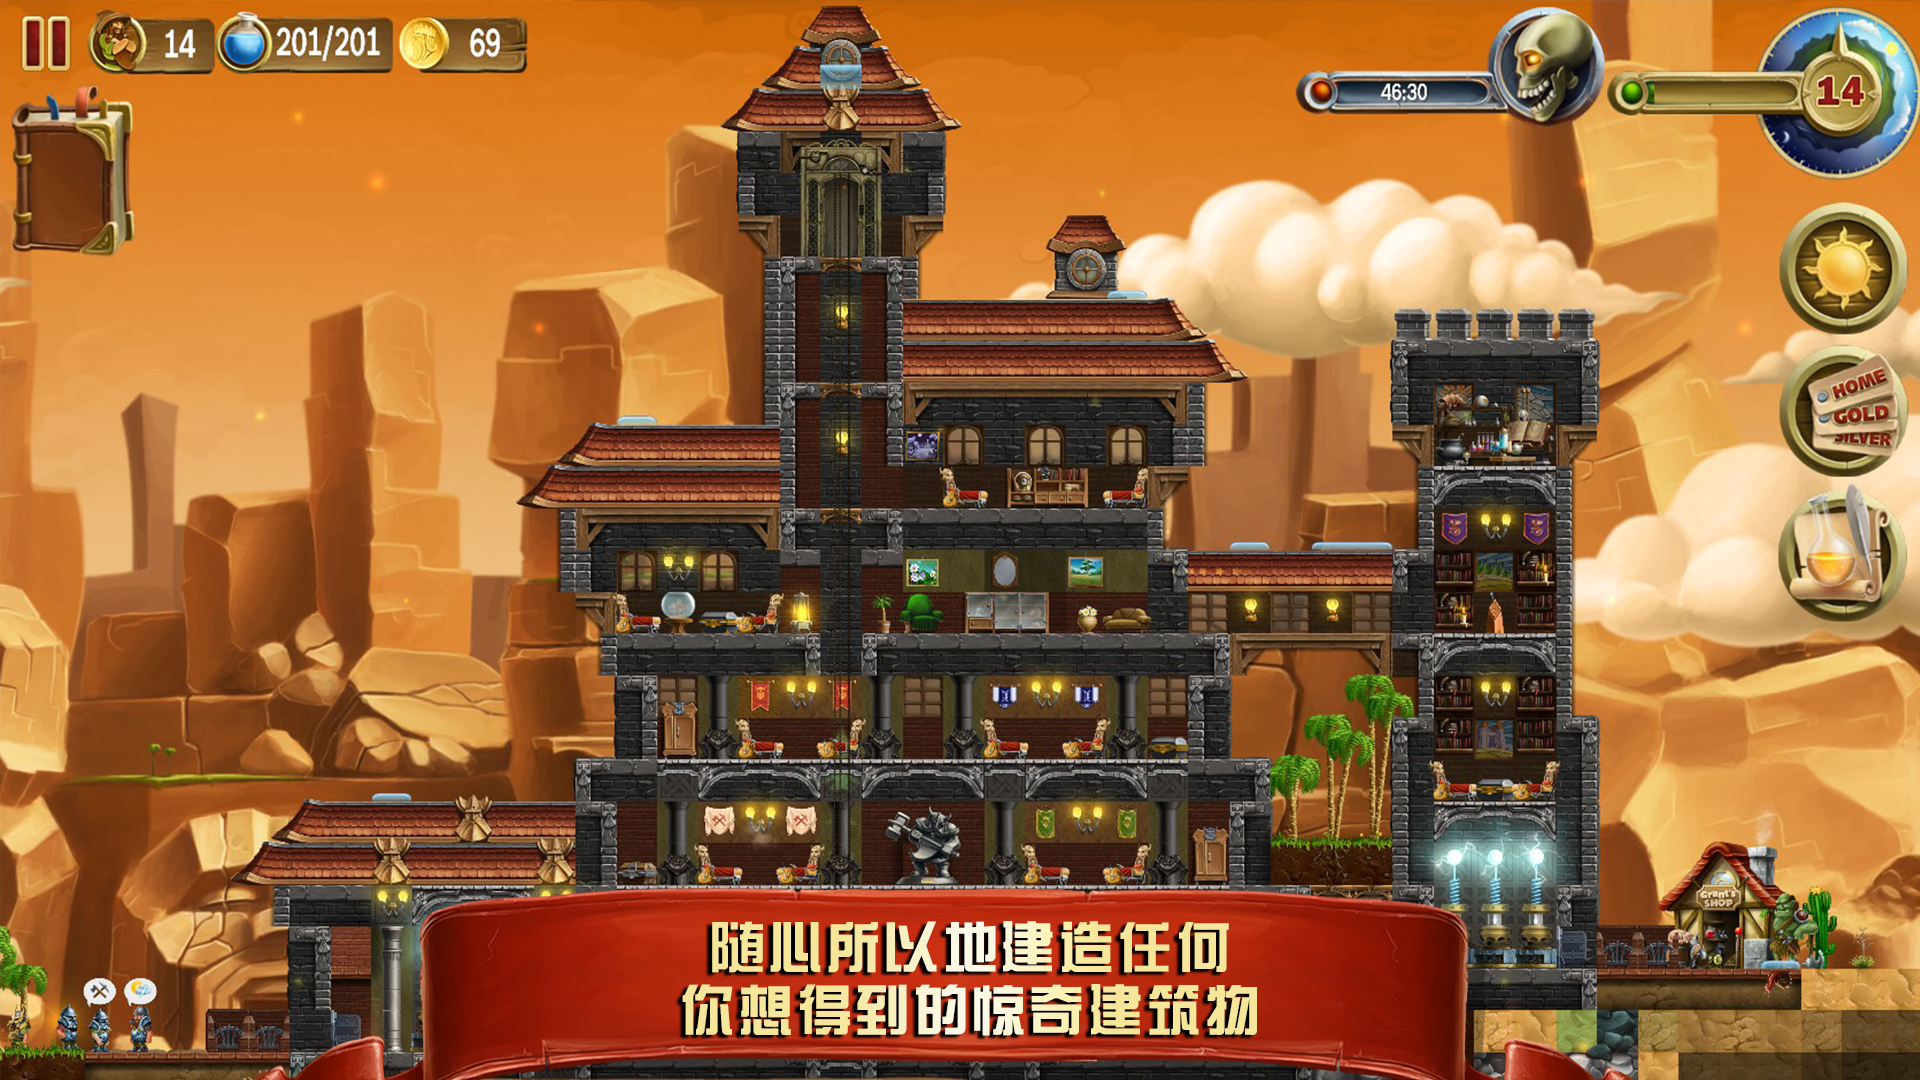 首款地下城生存冒险沙盒游戏——《打造世界》7月12日正式登录WeGame平台